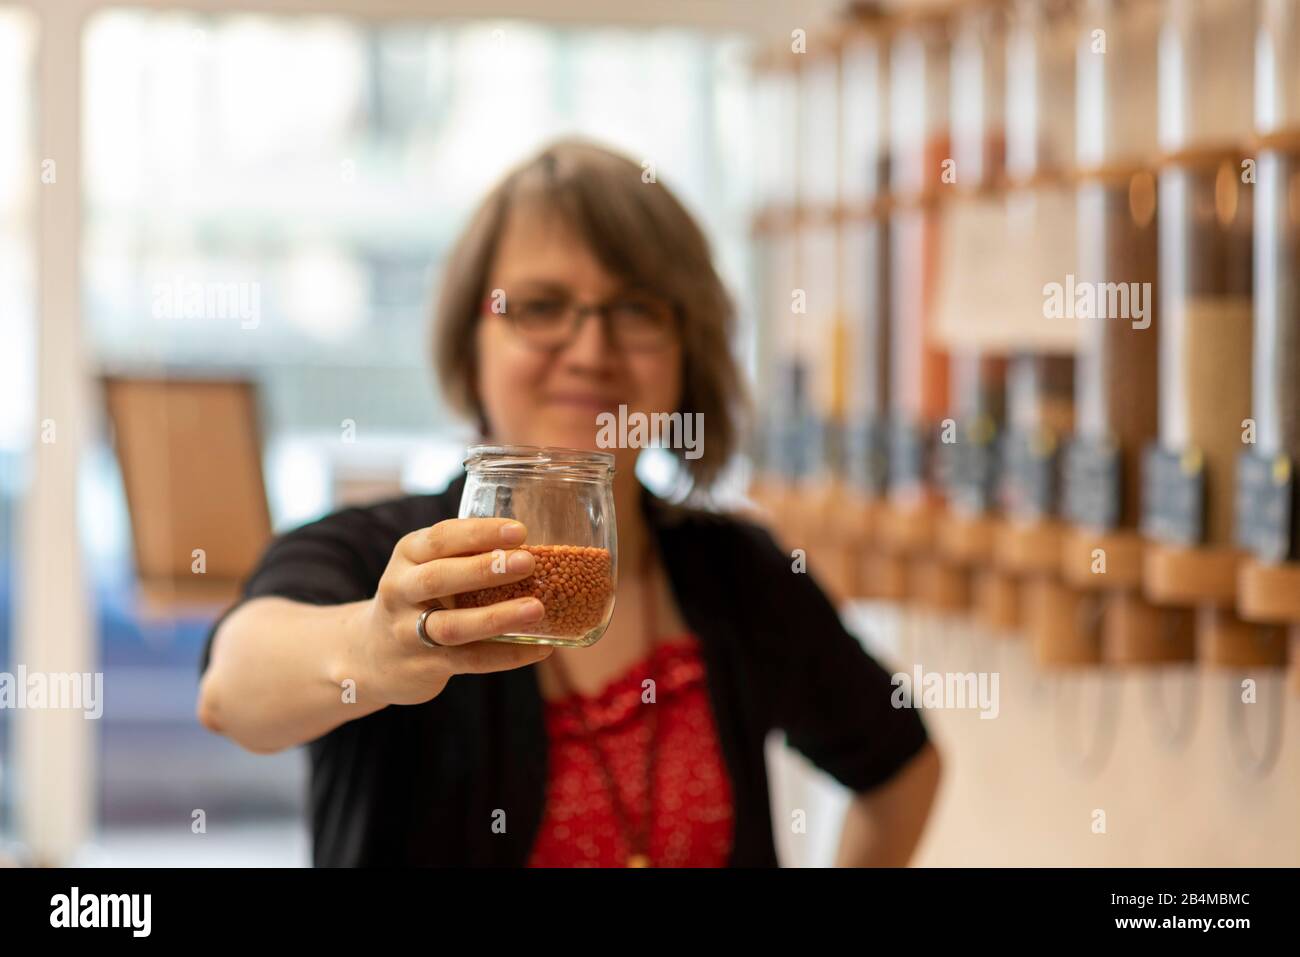 Eine Frau hält ein Glas mit Linsen in der Hand, Detail aus einem Unverpacktladen. Stock Photo